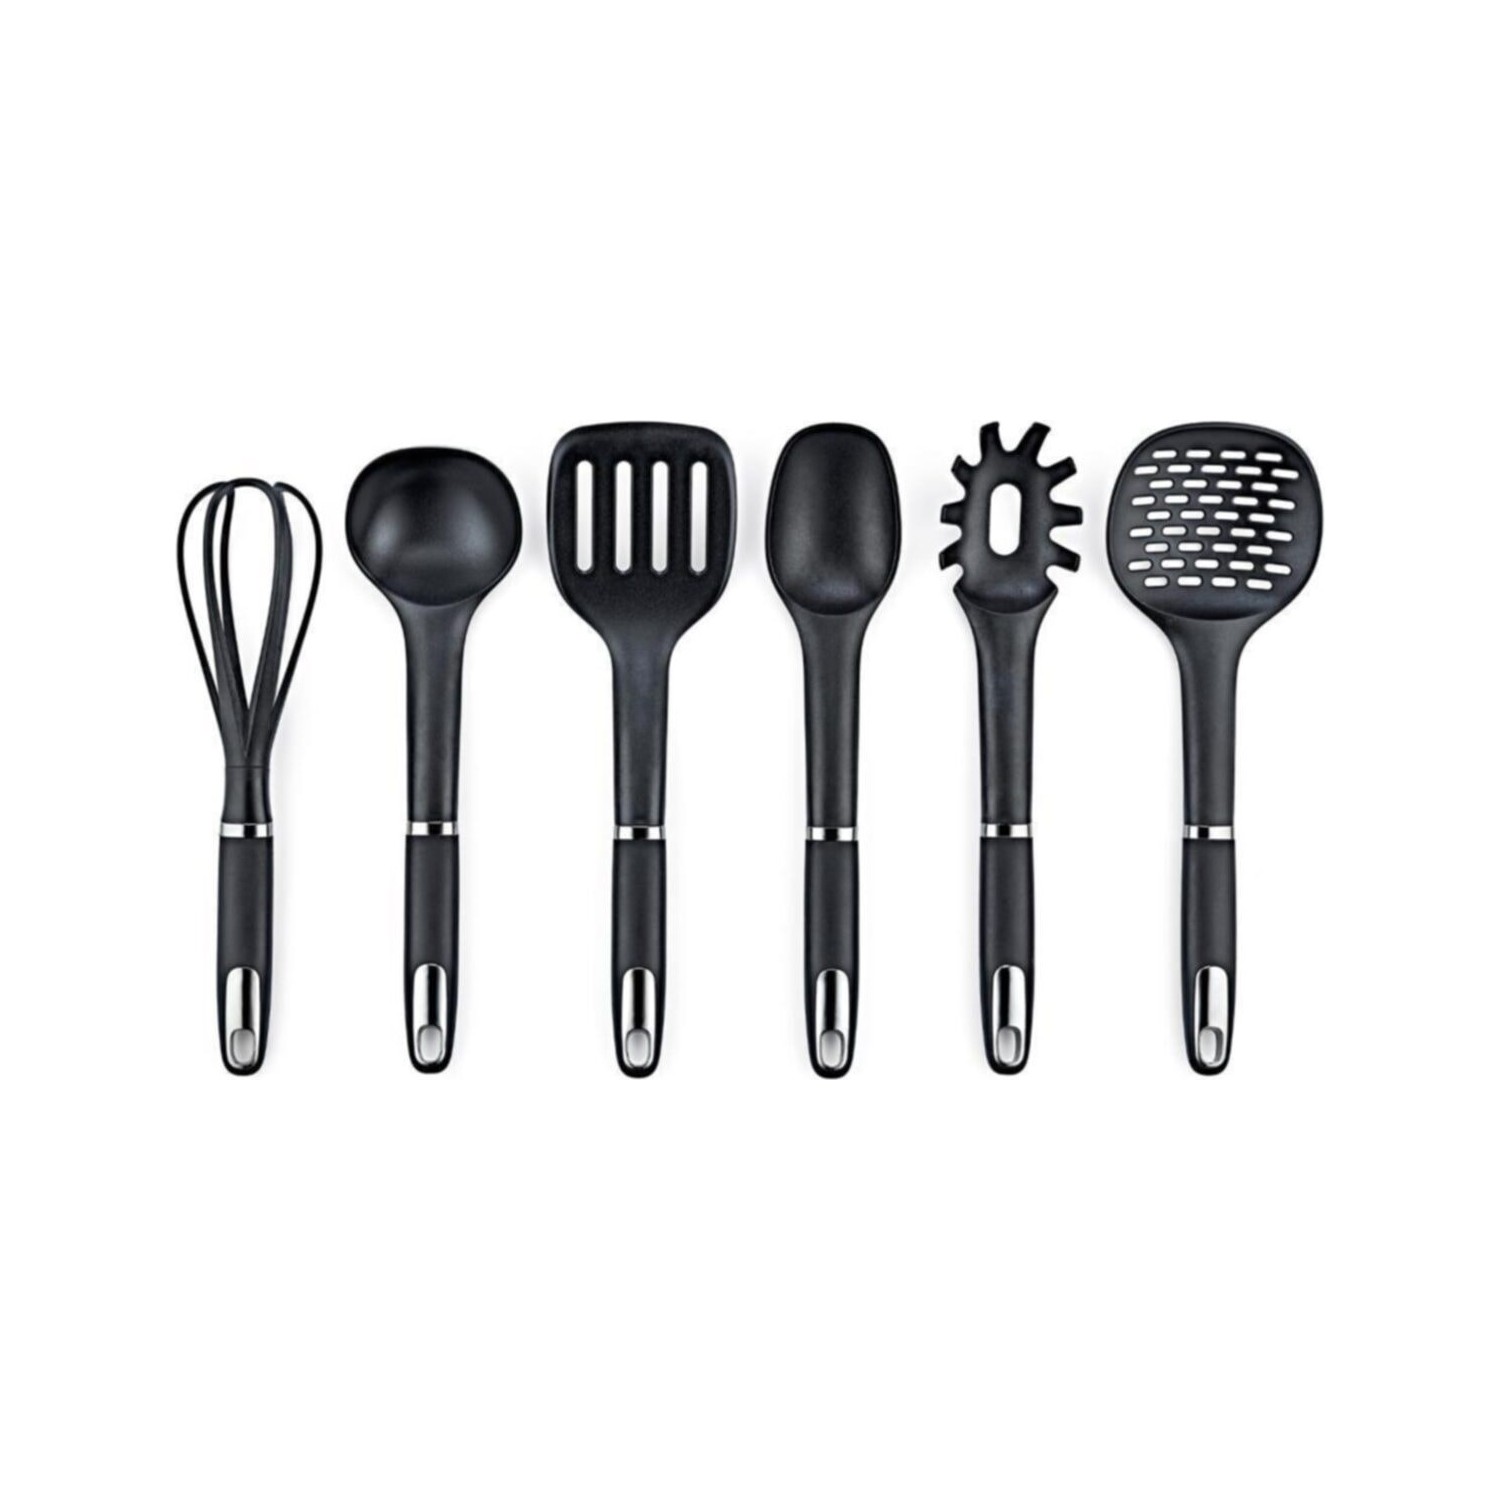 Набор кухонных принадлежностей Vipahmet из 6 предметов, черный набор кухонных принадлежностей vipahmet vp 309 с подставкой 6 предметов черный